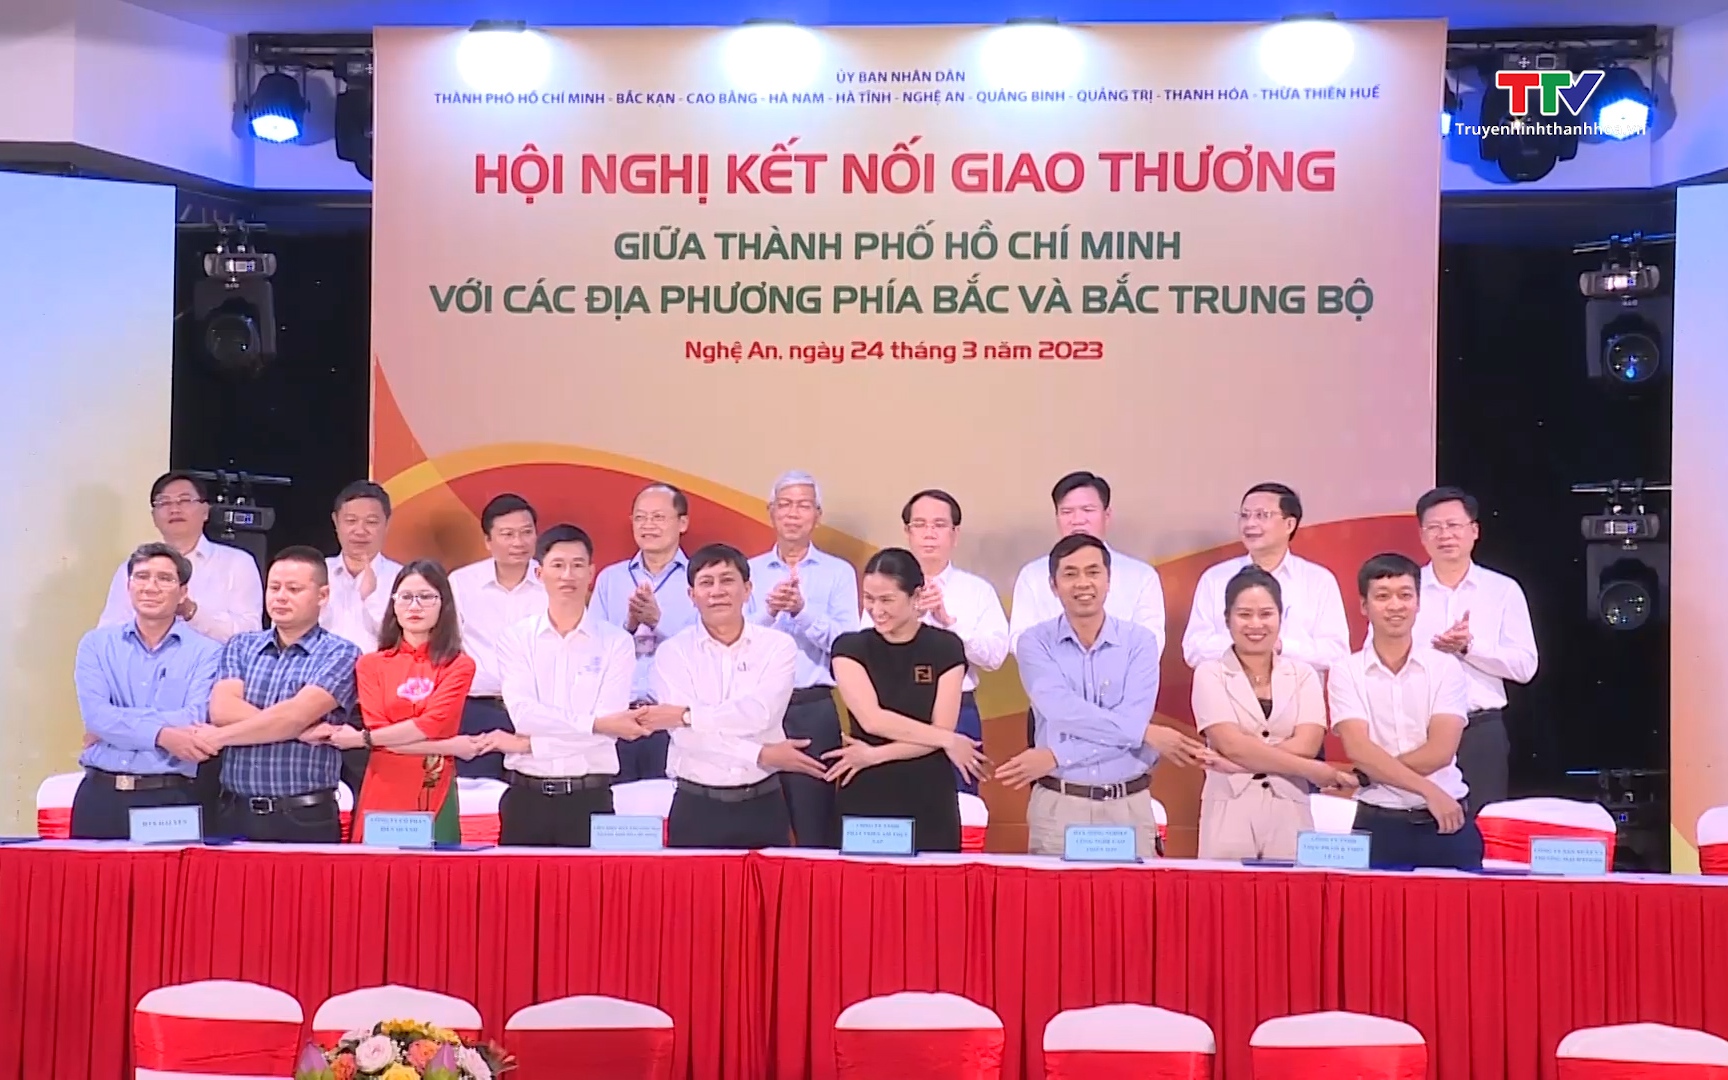 Kết nối giao thương giữa Thành phố Hồ Chí Minh với 9 tỉnh phía Bắc và Bắc Trung Bộ